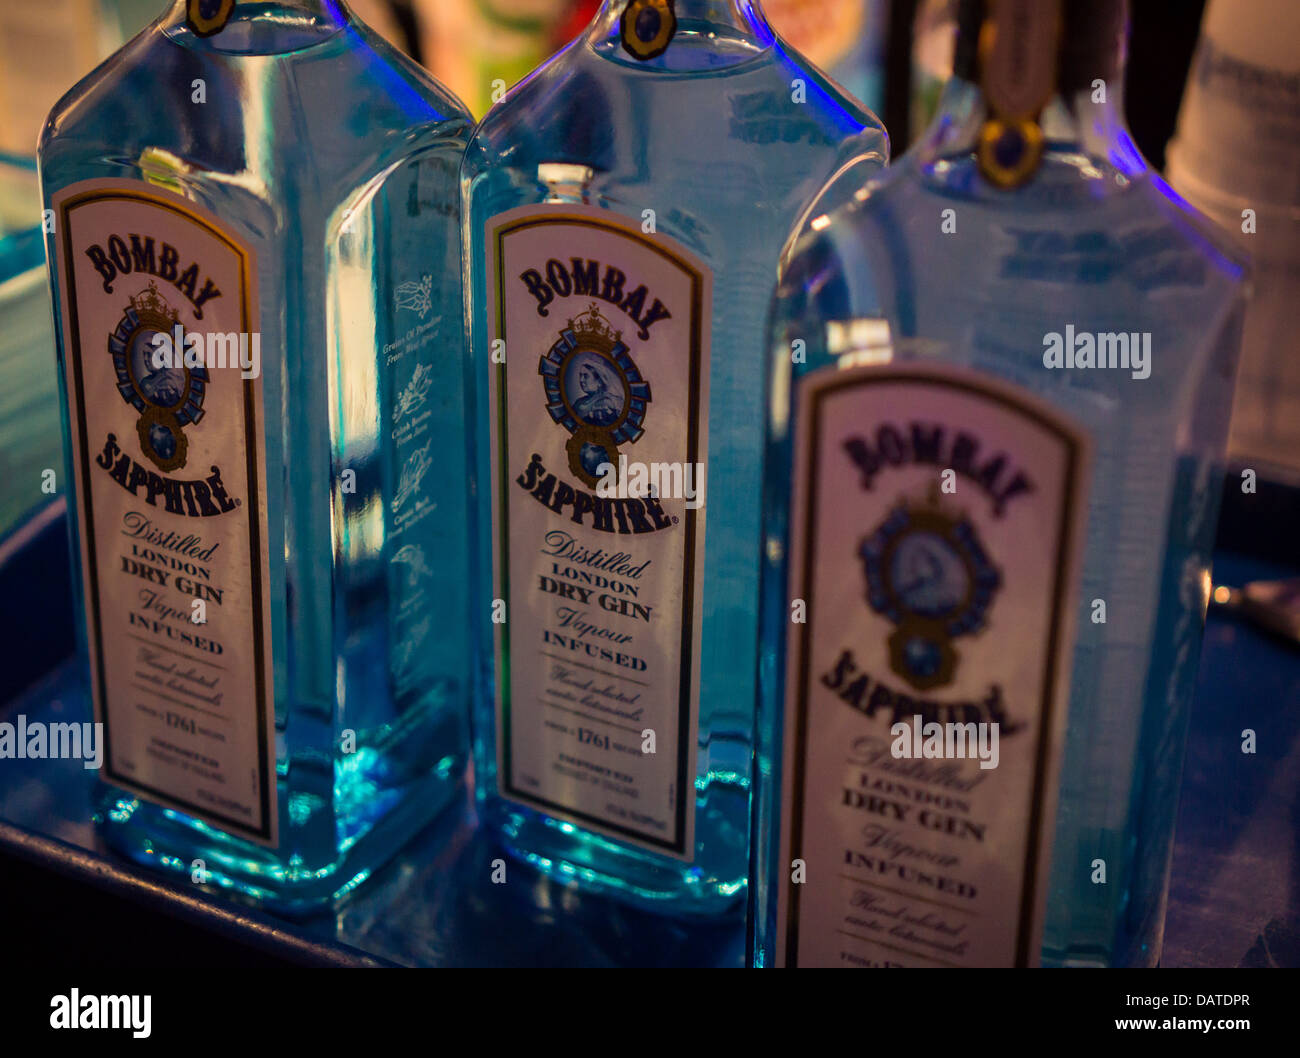 Bouteilles de Bombay Gin marque sont vus lors d'une fête à New York le Mardi, Juillet 16, 2013. (© Richard B. Levine) Banque D'Images